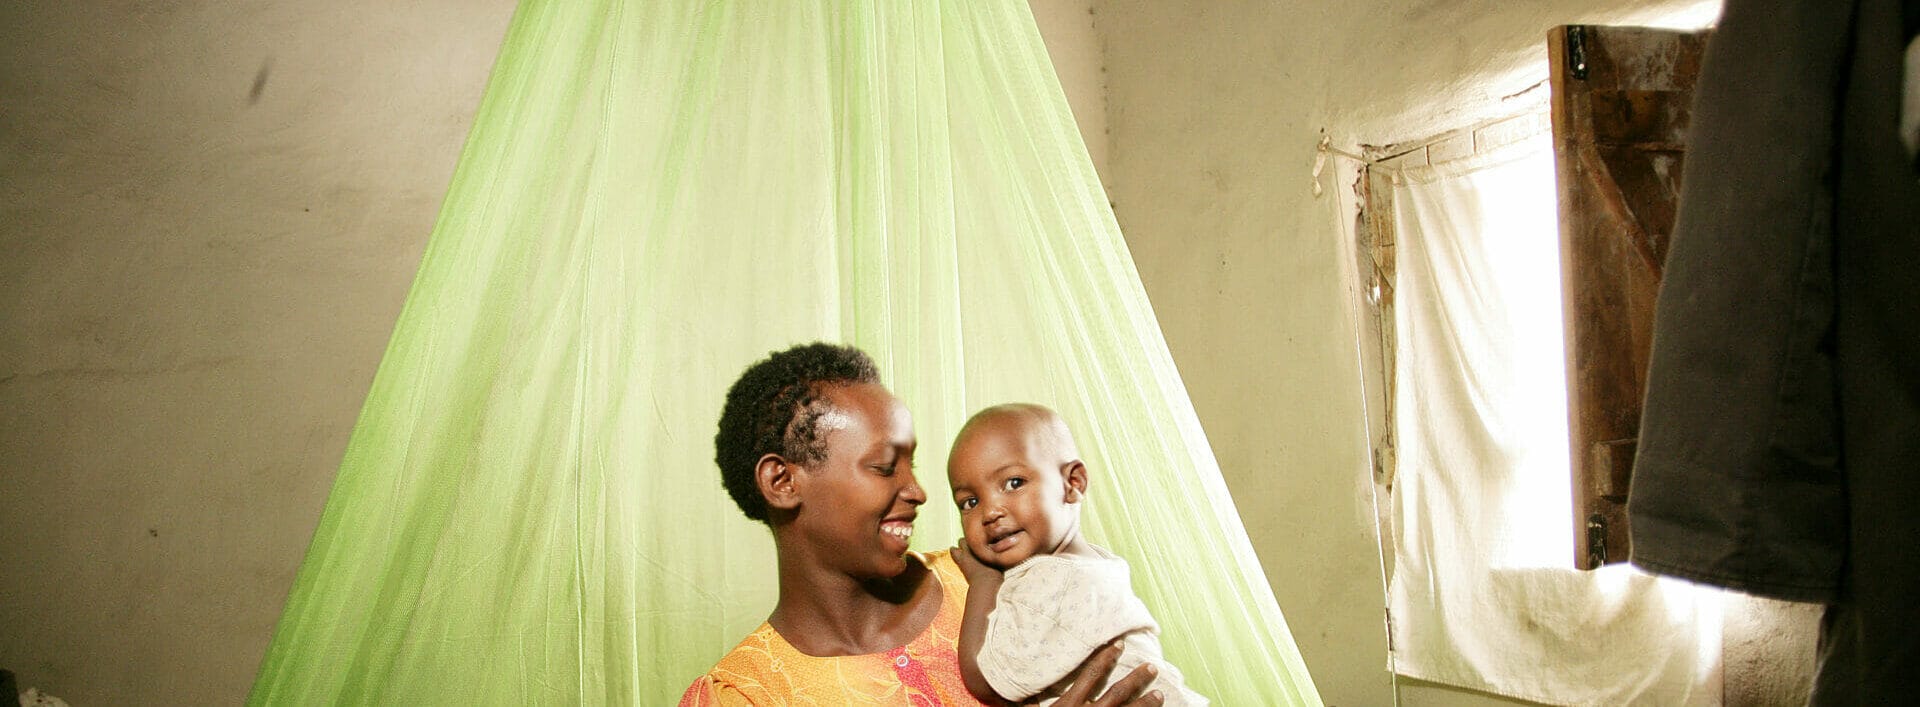 Paludisme : définir les freins à la protection des femmes enceintes